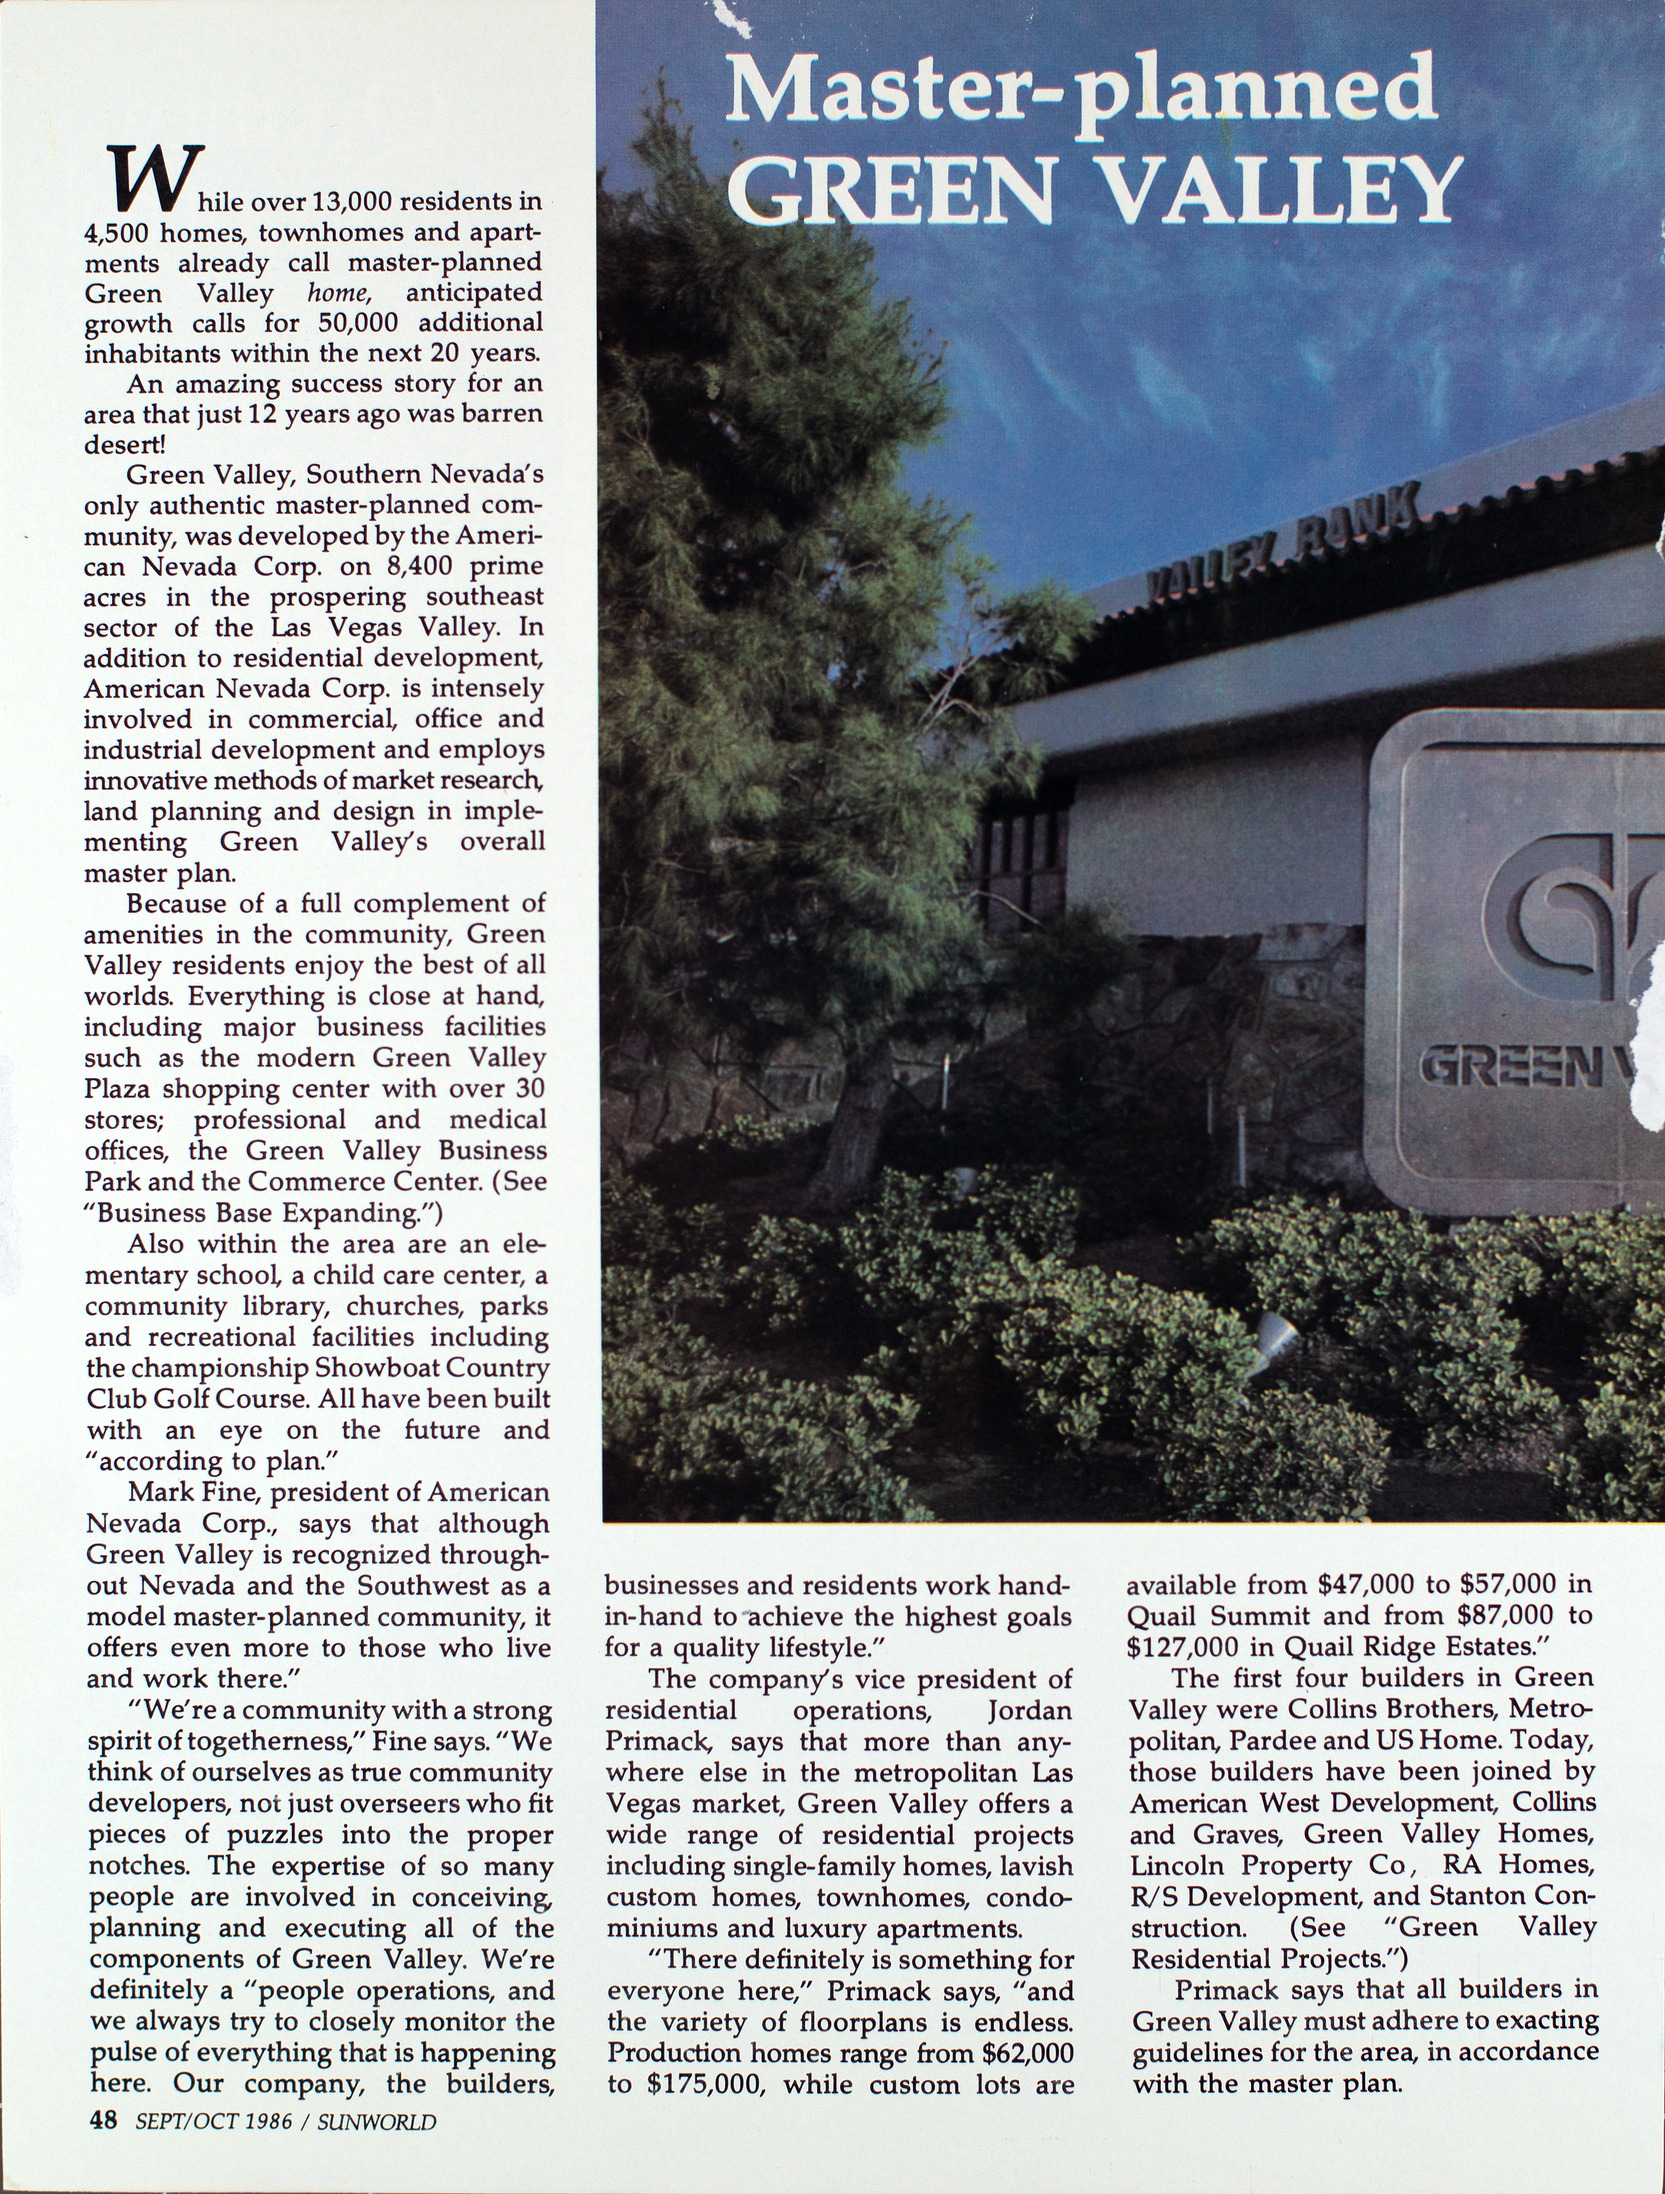 Clipping, Master-planned Green Valley, Sunworld, September-October 1986